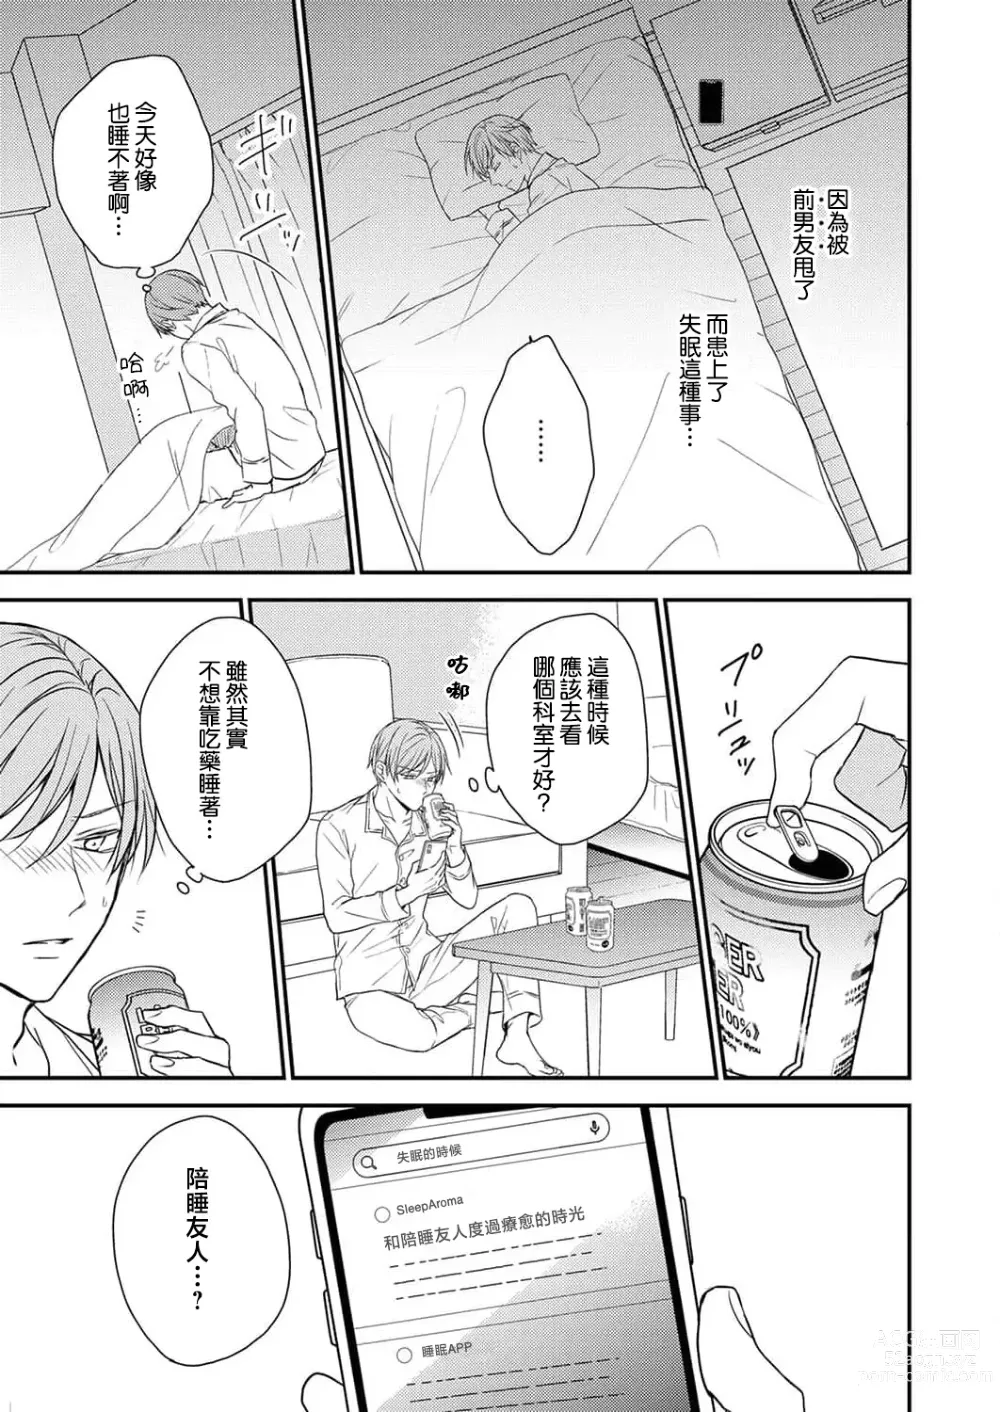 Page 7 of manga 陪睡男友的恋爱疗法 1